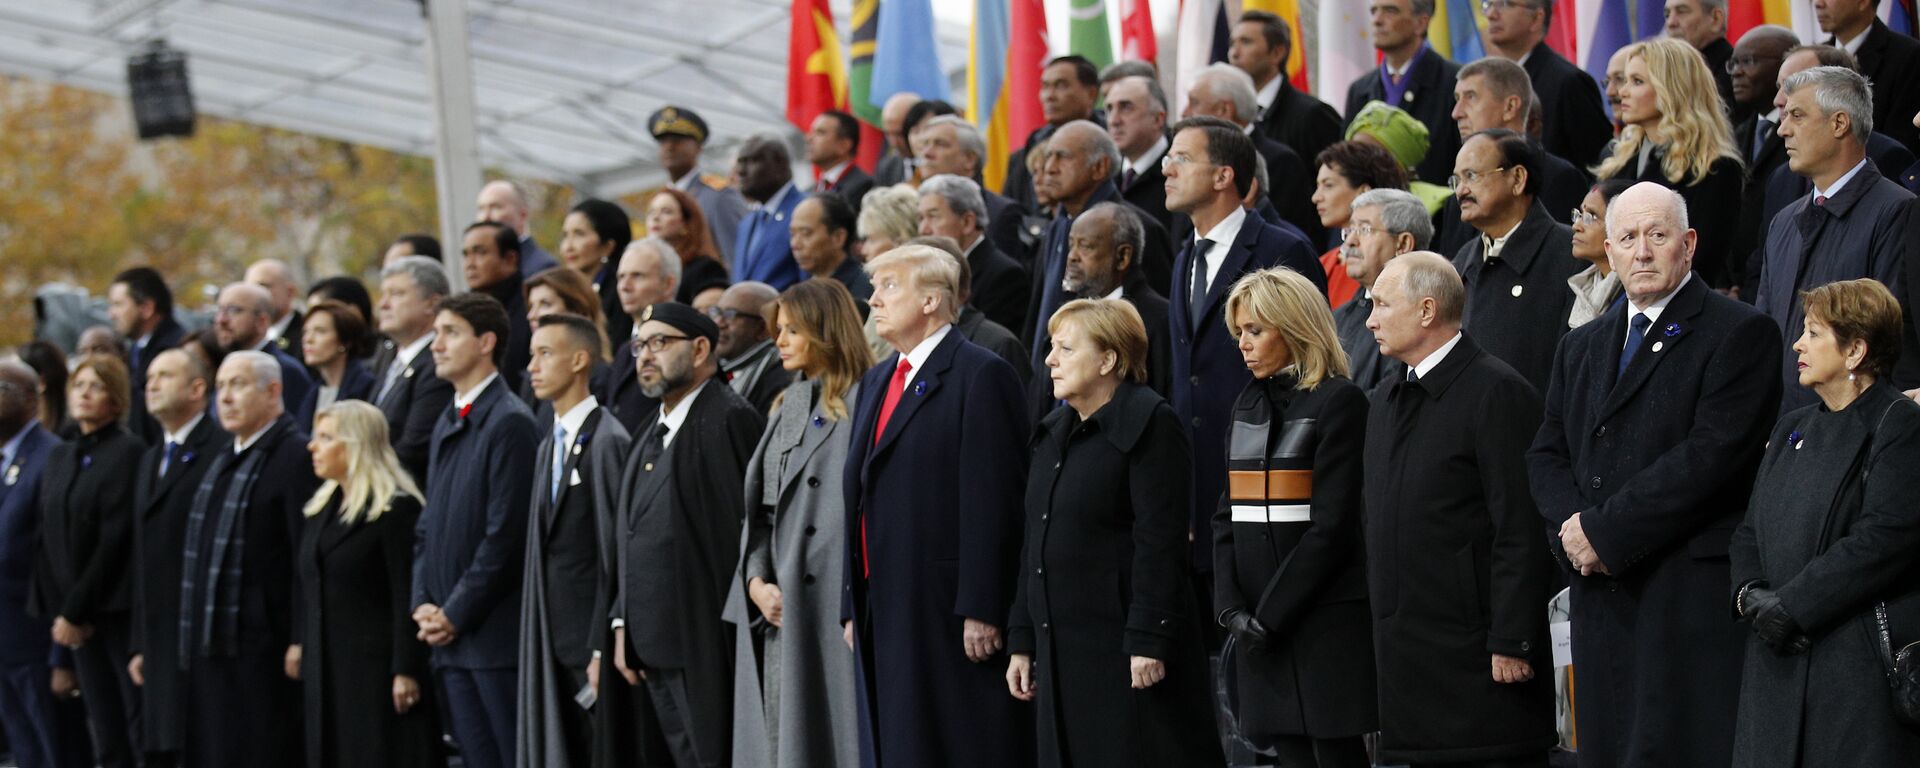 Svetski lideri na svečanosti u Parizu - Sputnik Srbija, 1920, 13.11.2018